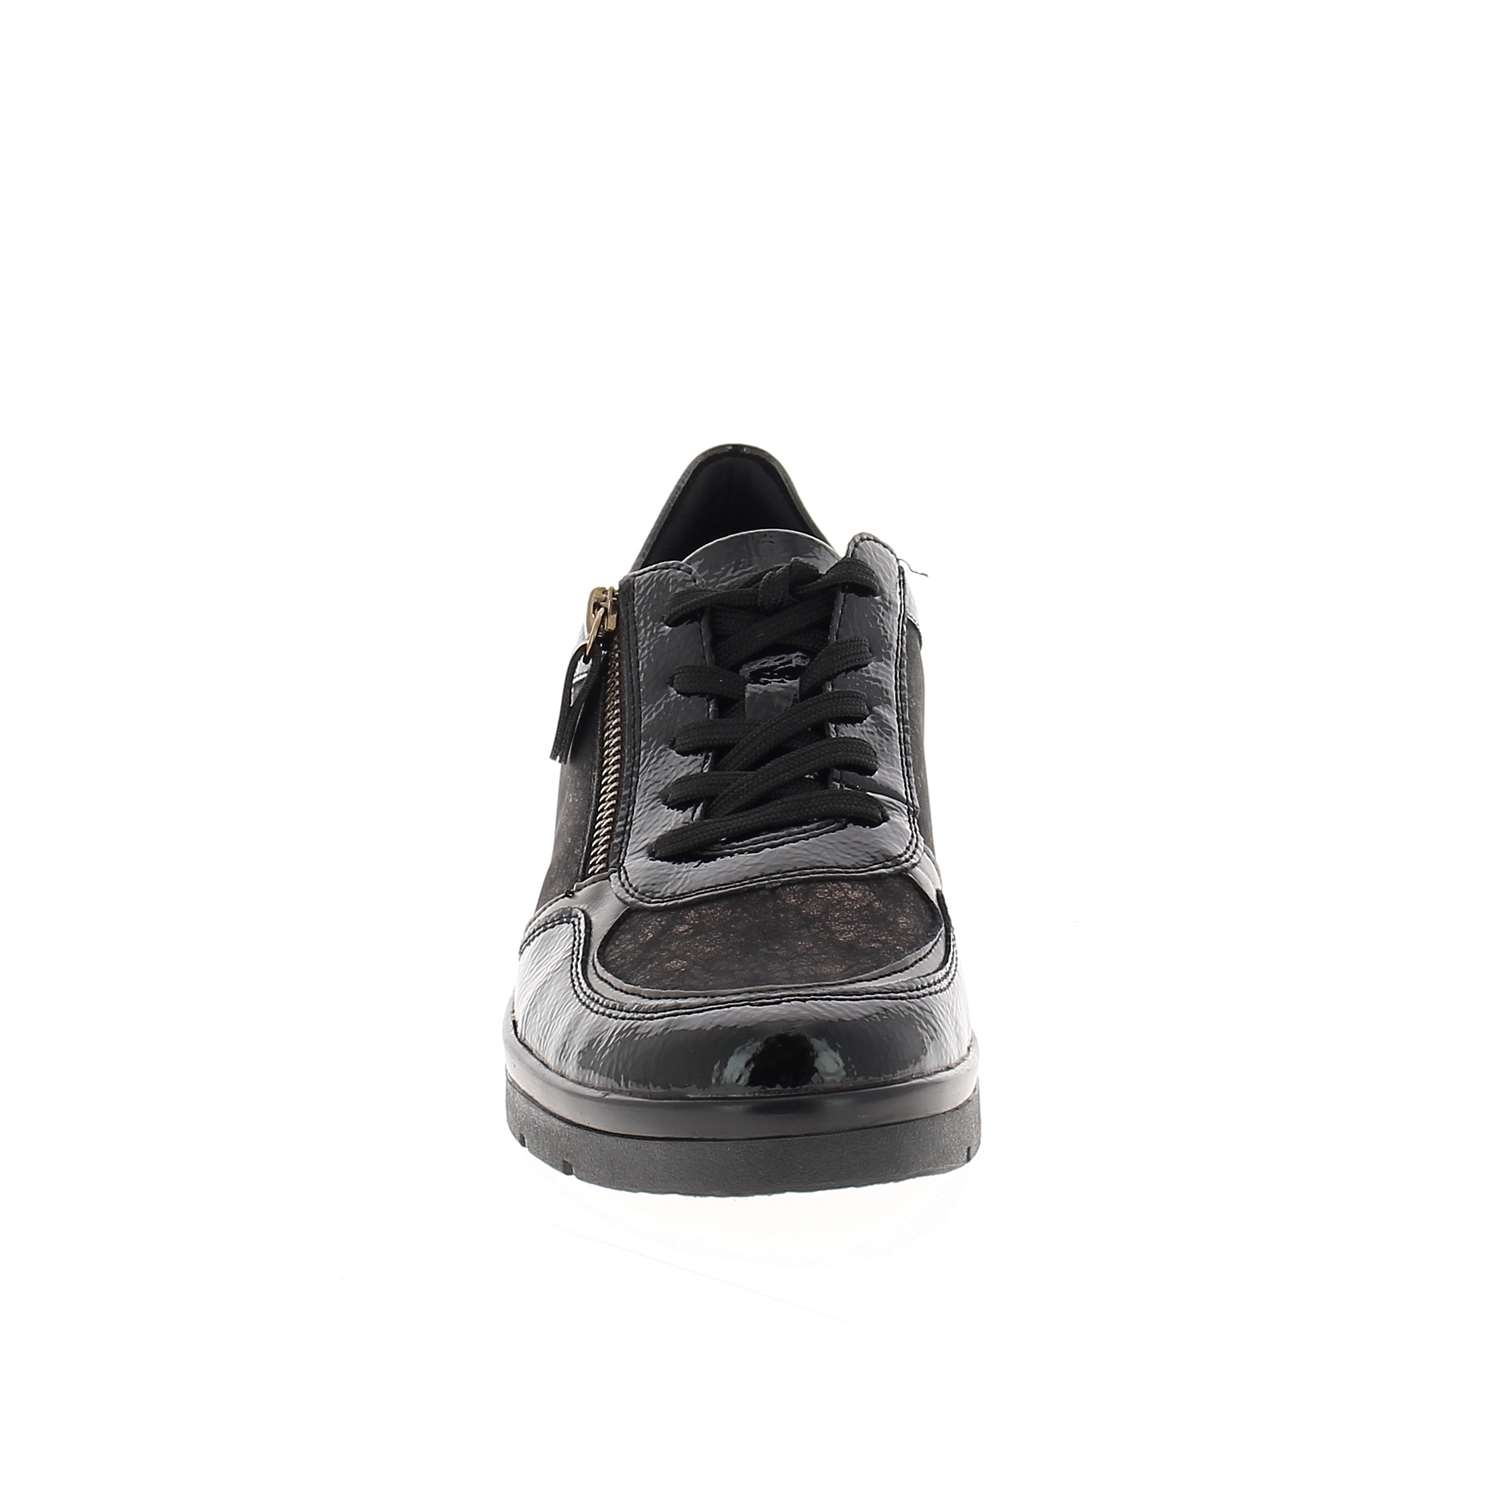 03 - REBEW - REMONTE - Chaussures à lacets - Cuir